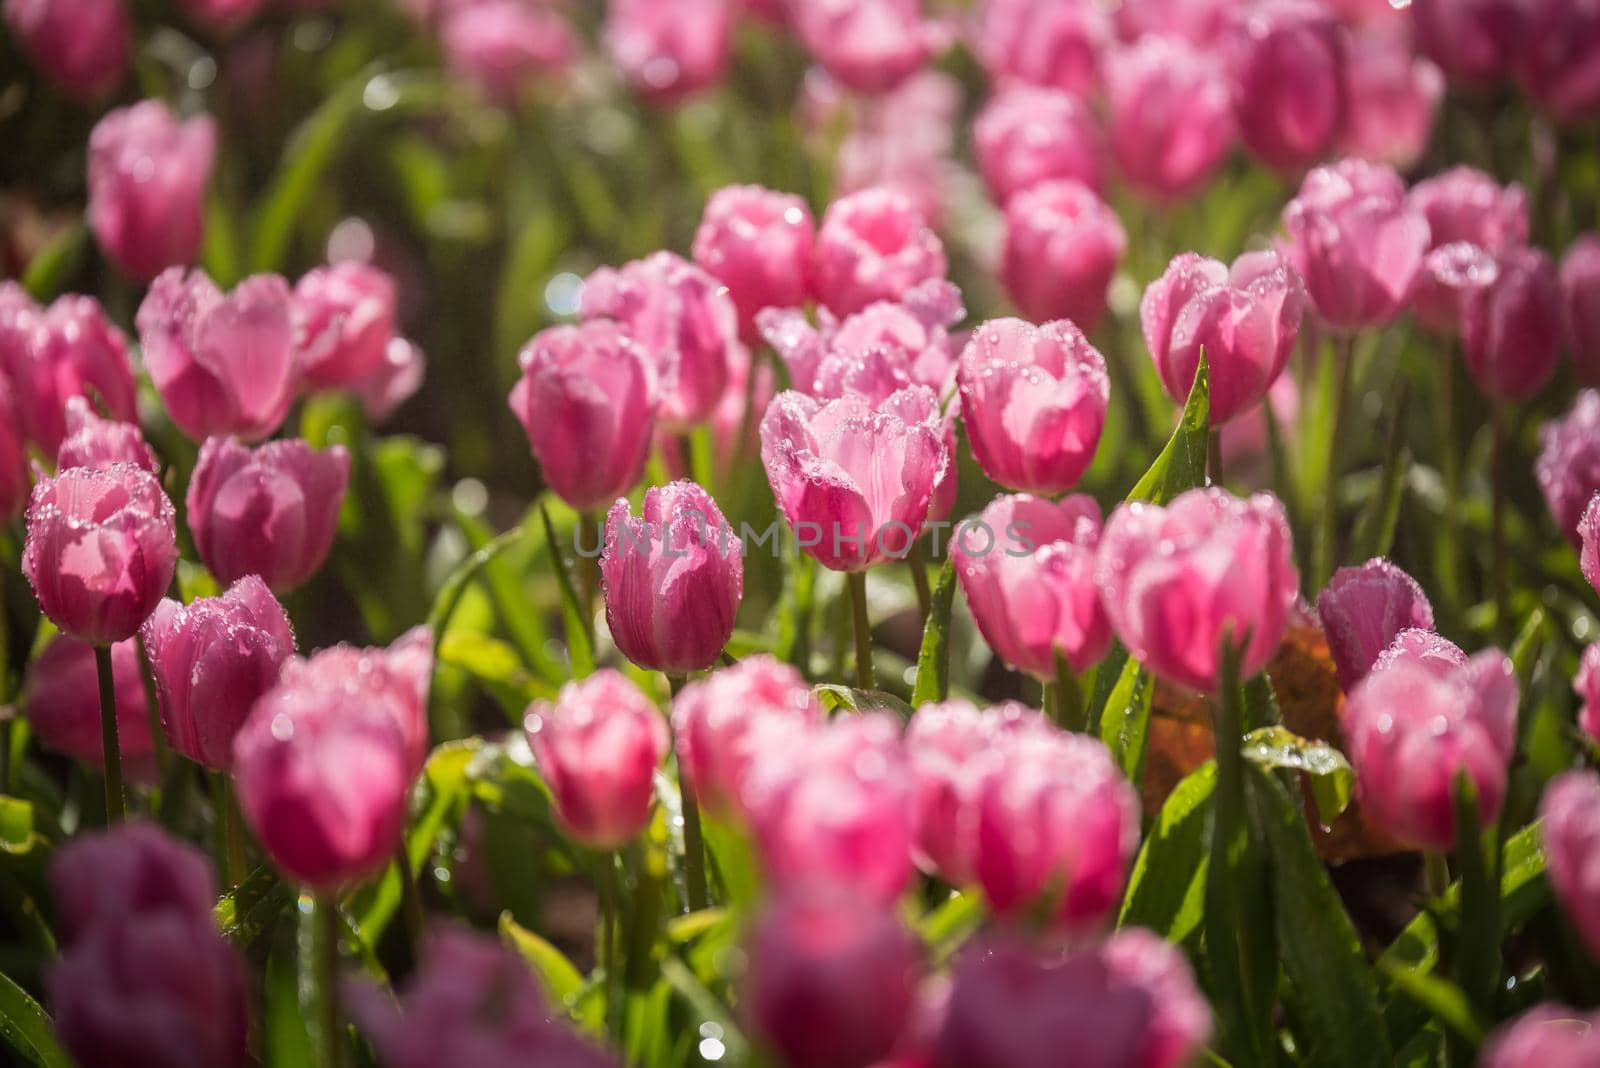 tulips flowers in the garden by Wmpix